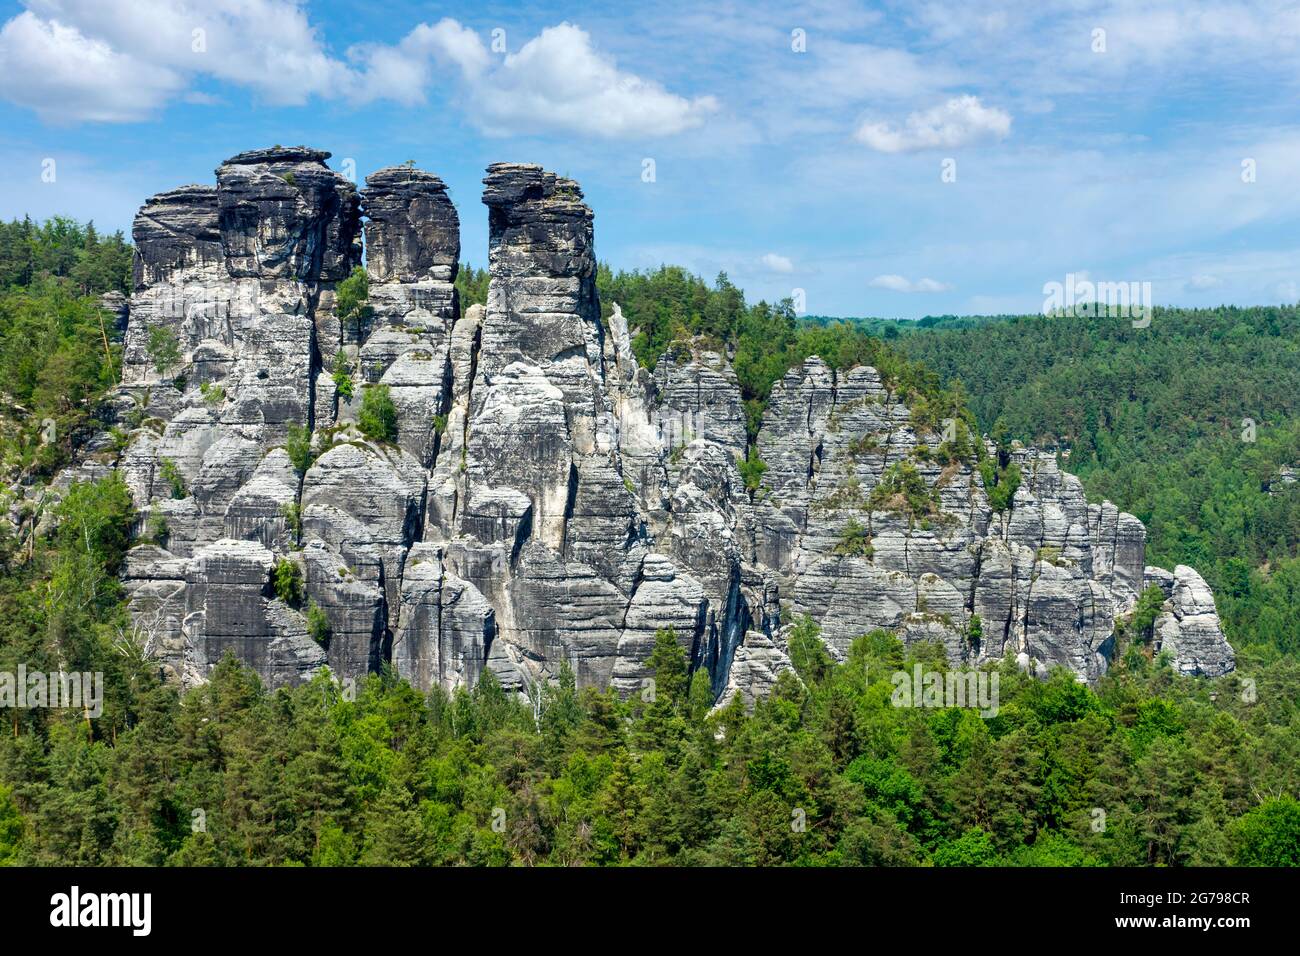 Die Bastei ist eine Felsformation mit Aussichtsplattform in der Sächsischen Schweiz am rechten Elbufer im Bereich der Gemeinde Lohmen. Es ist eine der beliebtesten Touristenattraktionen in der Sächsischen Schweiz. Stockfoto